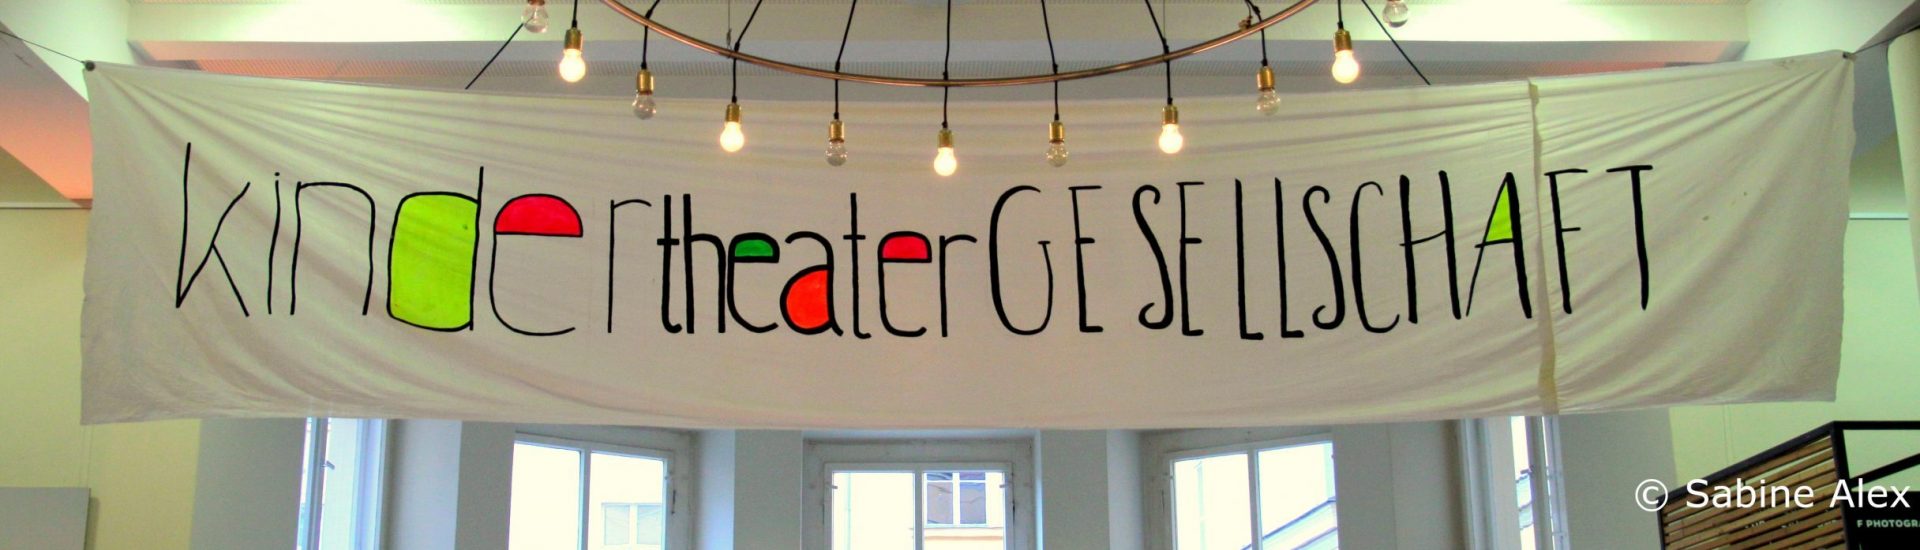 Banner auf dem steht KinderTheaterGesellschaft